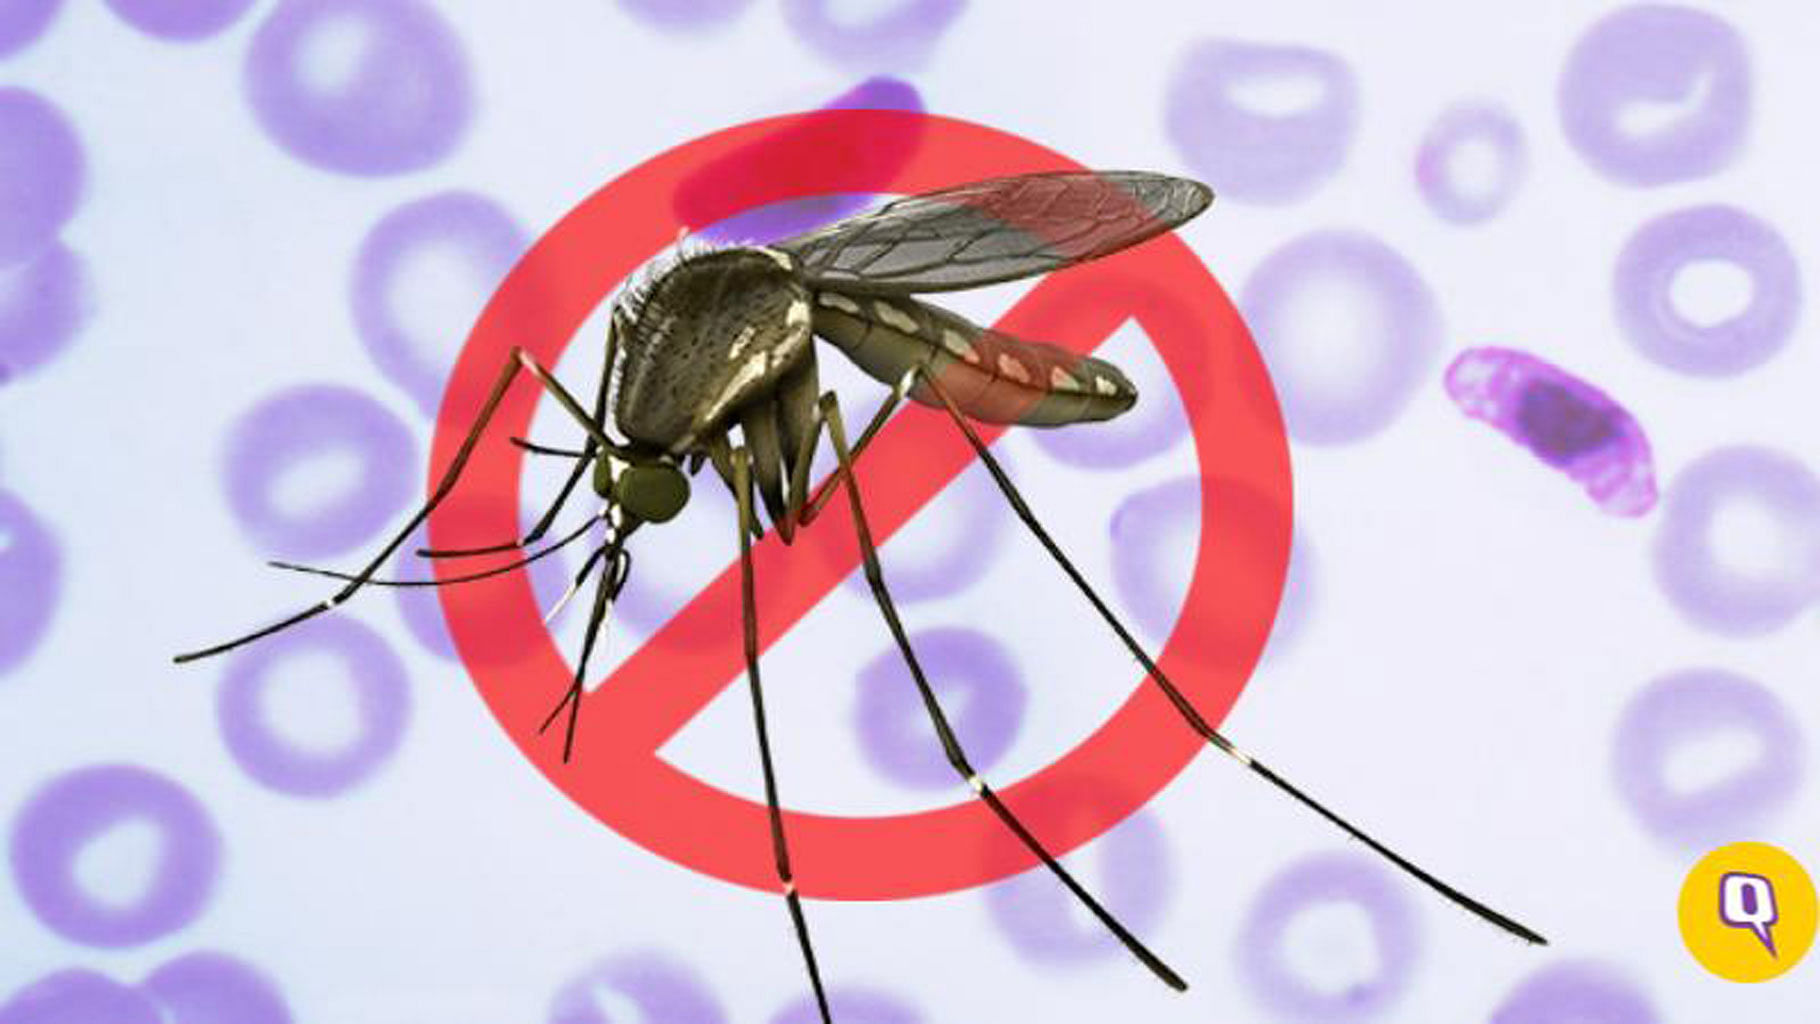 Malaria requires quick action globally: UN health agencies